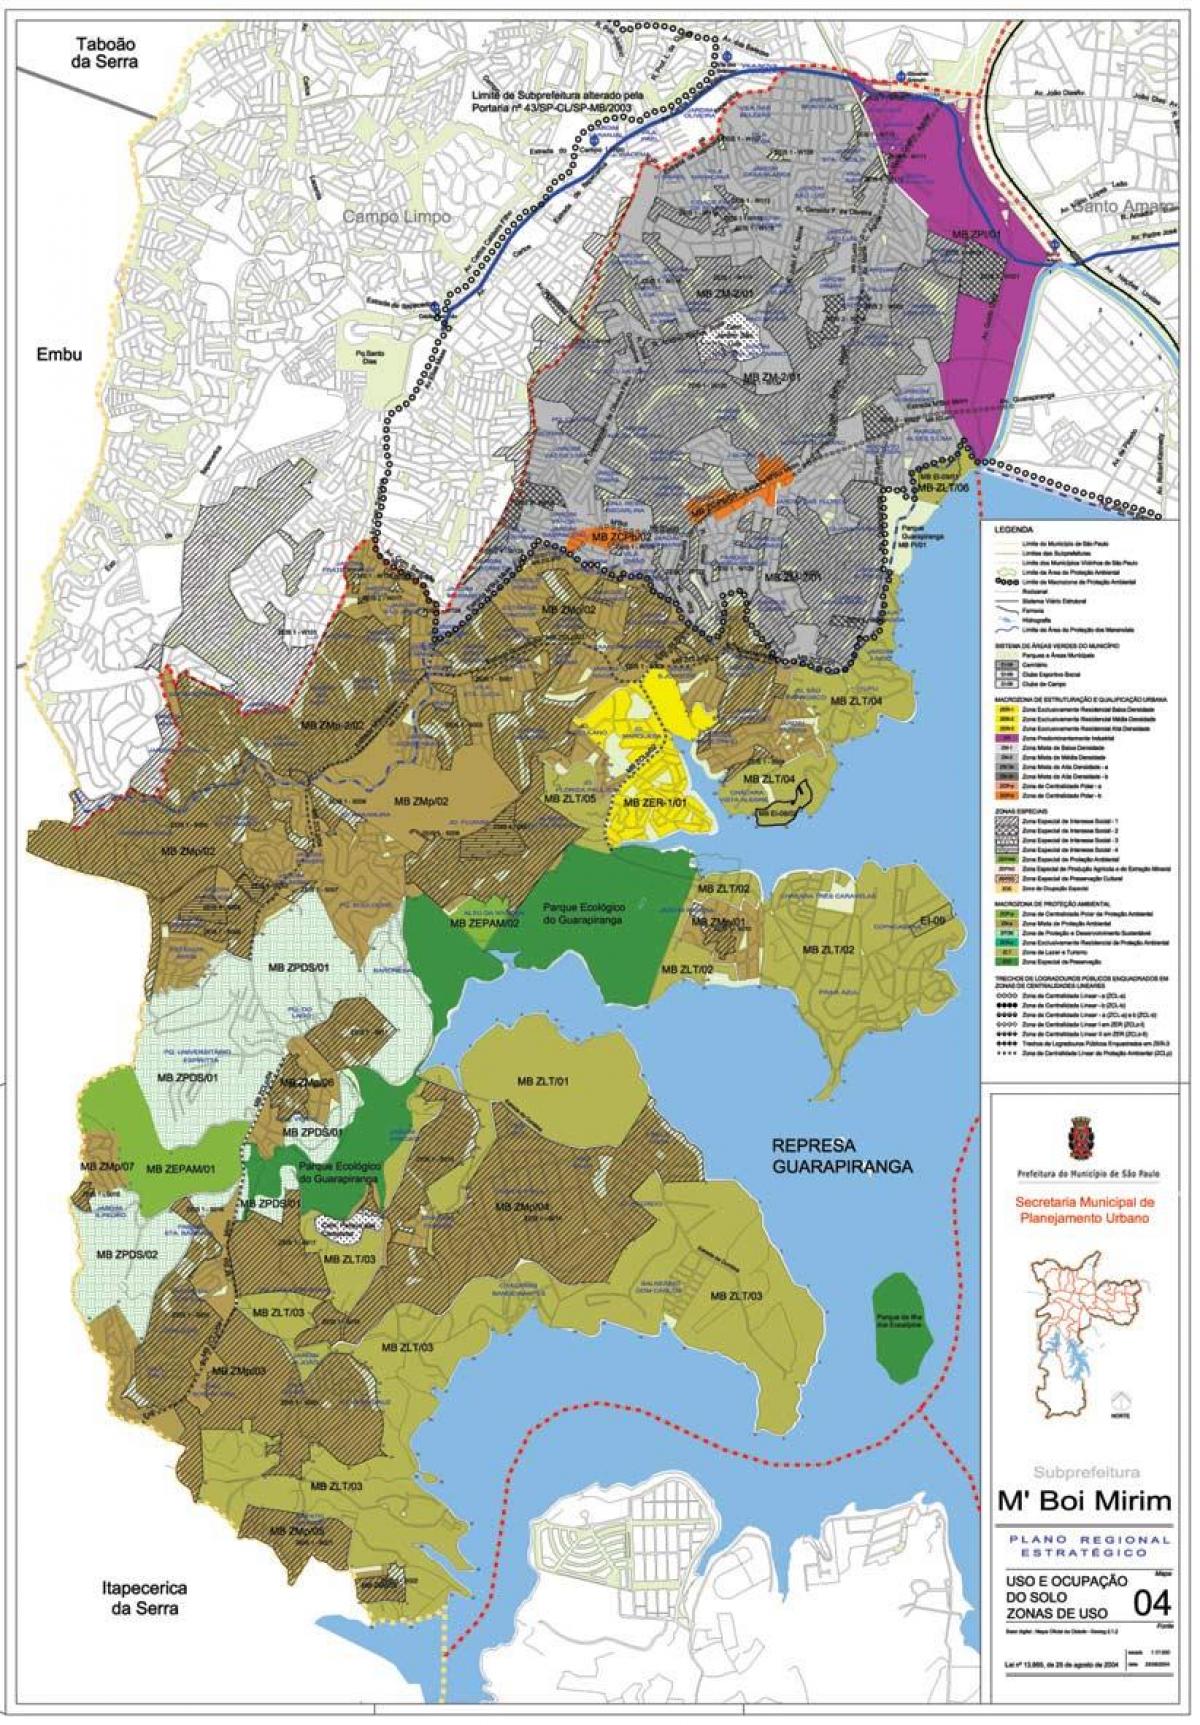 Peta M'Boi Mirim São Paulo - Pekerjaan tanah